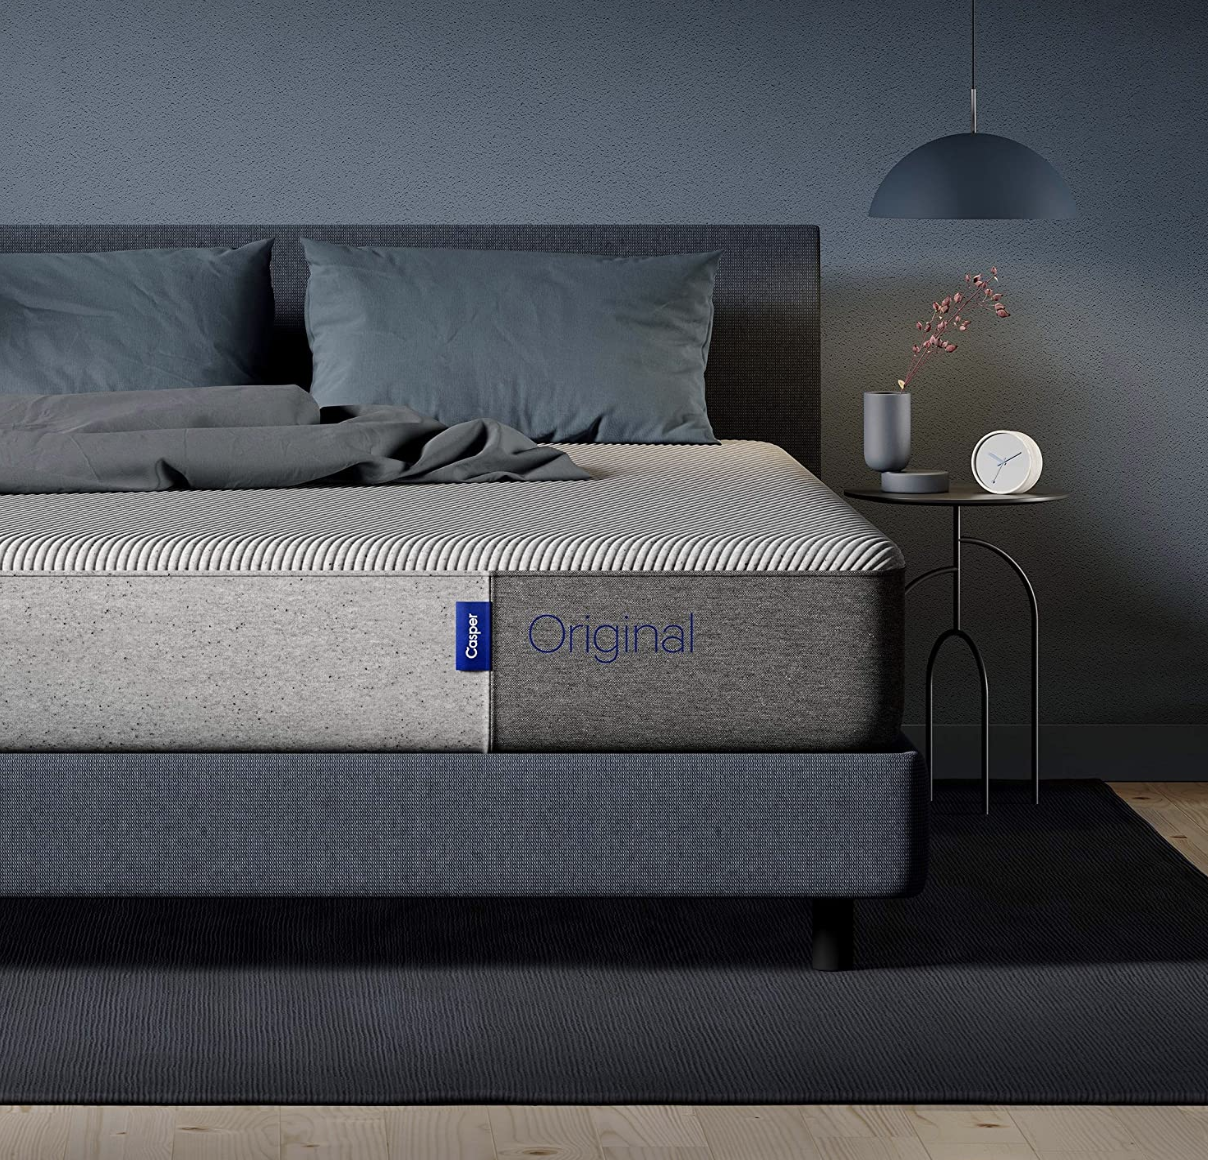 Casper mattress with pillows on bed